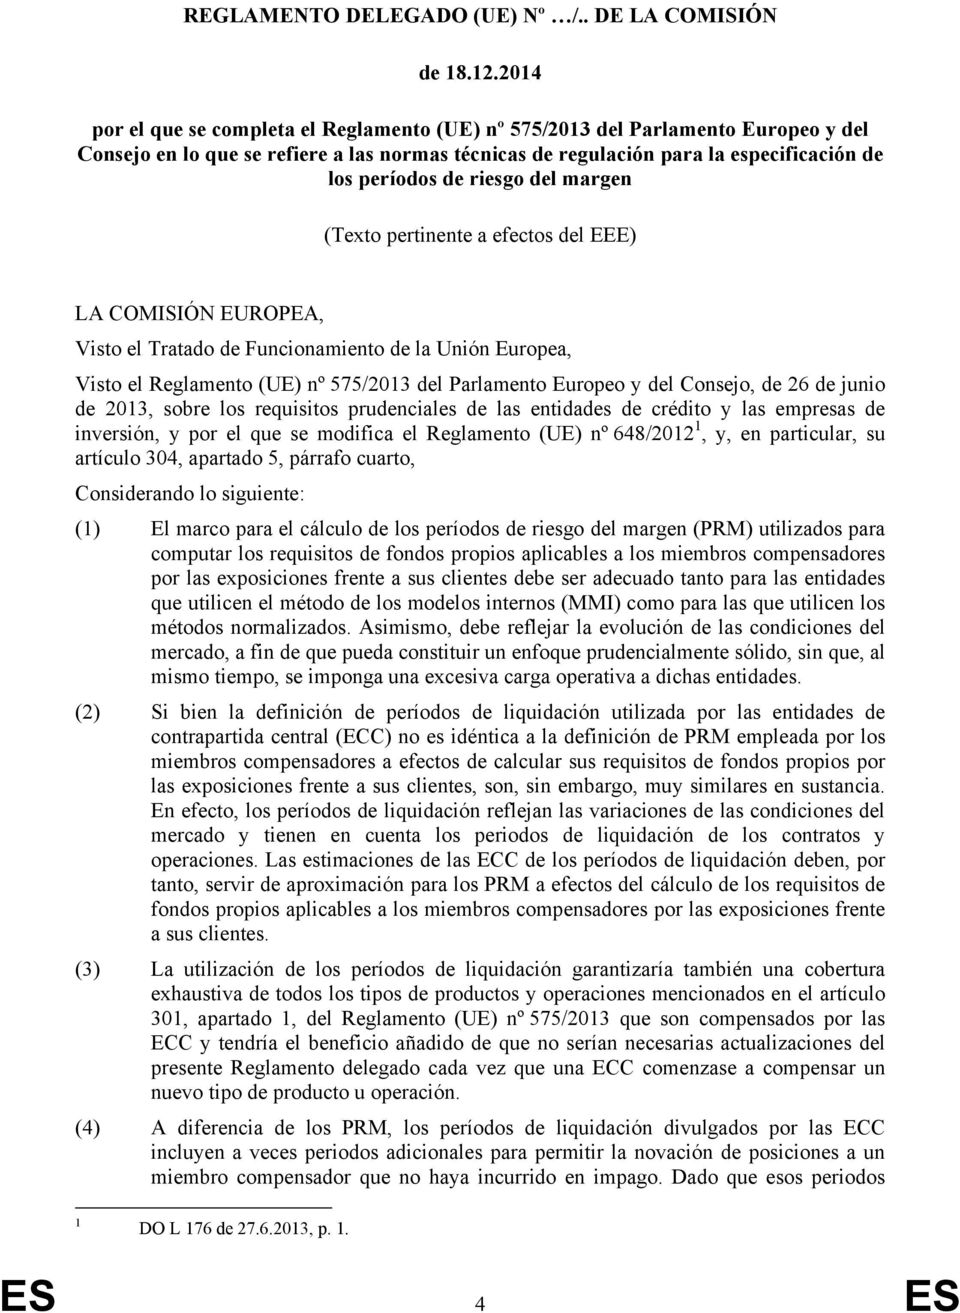 riesgo del margen (Texto pertinente a efectos del EEE) LA COMISIÓN EUROPEA, Visto el Tratado de Funcionamiento de la Unión Europea, Visto el Reglamento (UE) nº 575/2013 del Parlamento Europeo y del